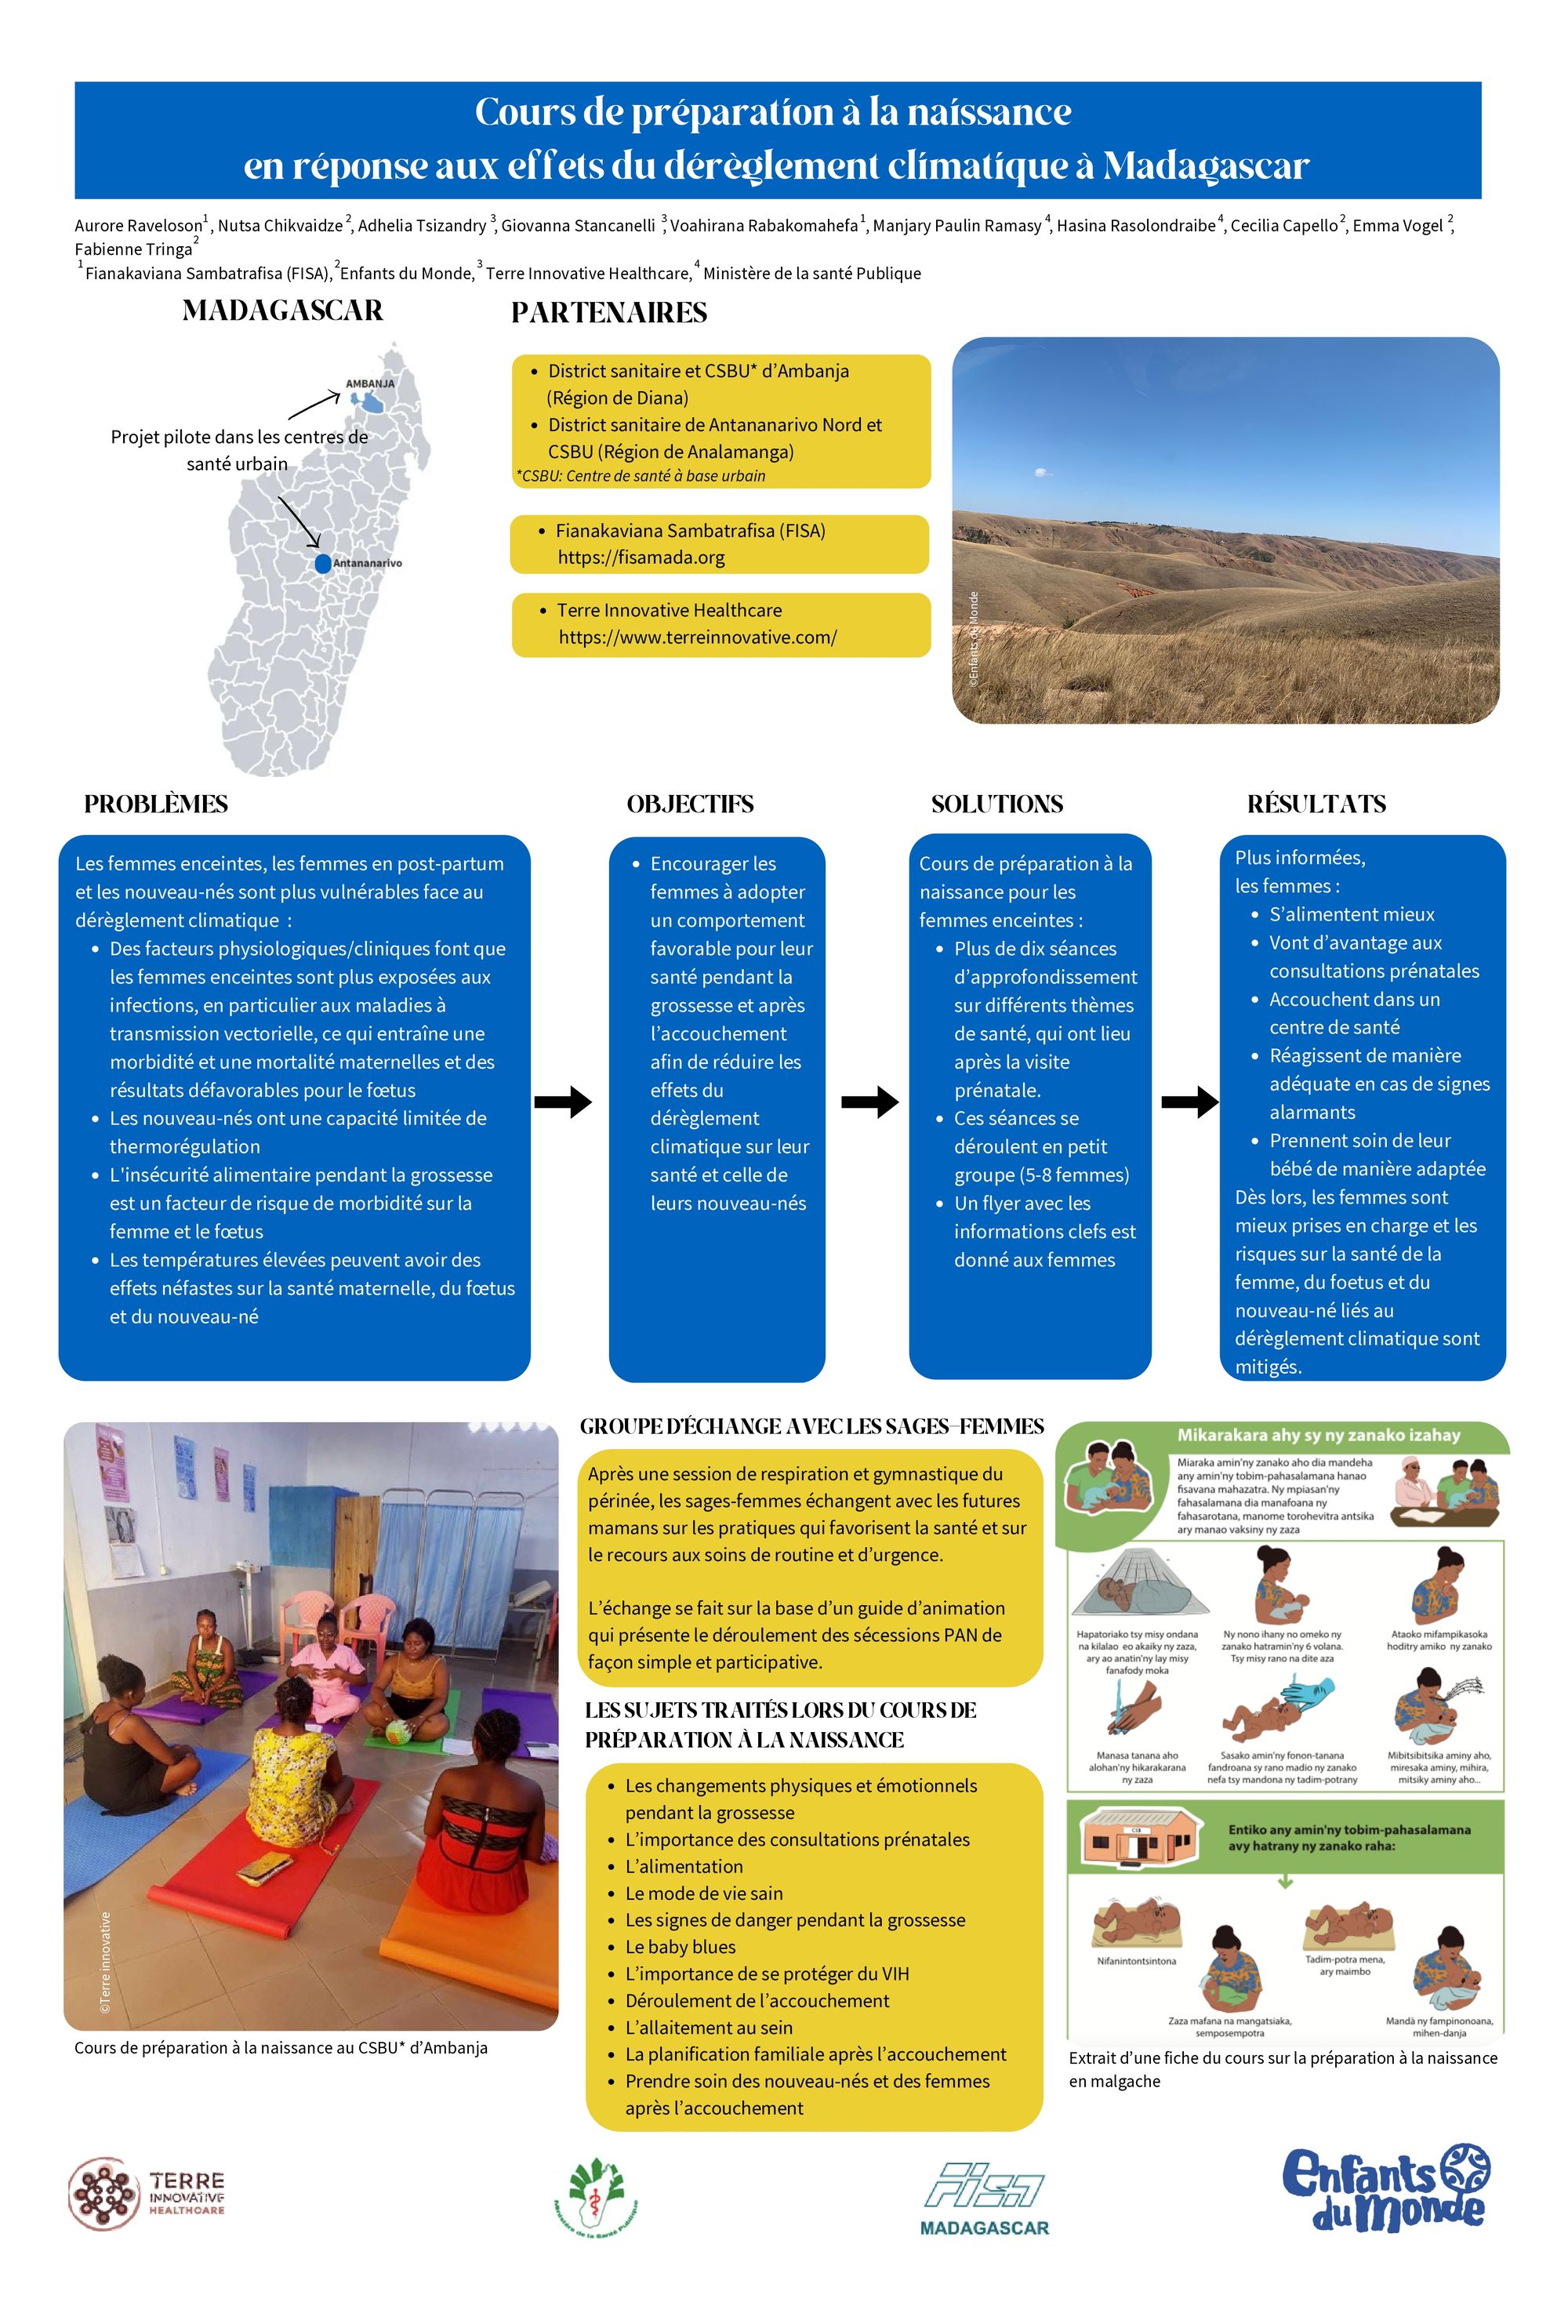 Environnement	Cours de préparation à la naissance en réponse aux effets du changement climatique à Madagascar